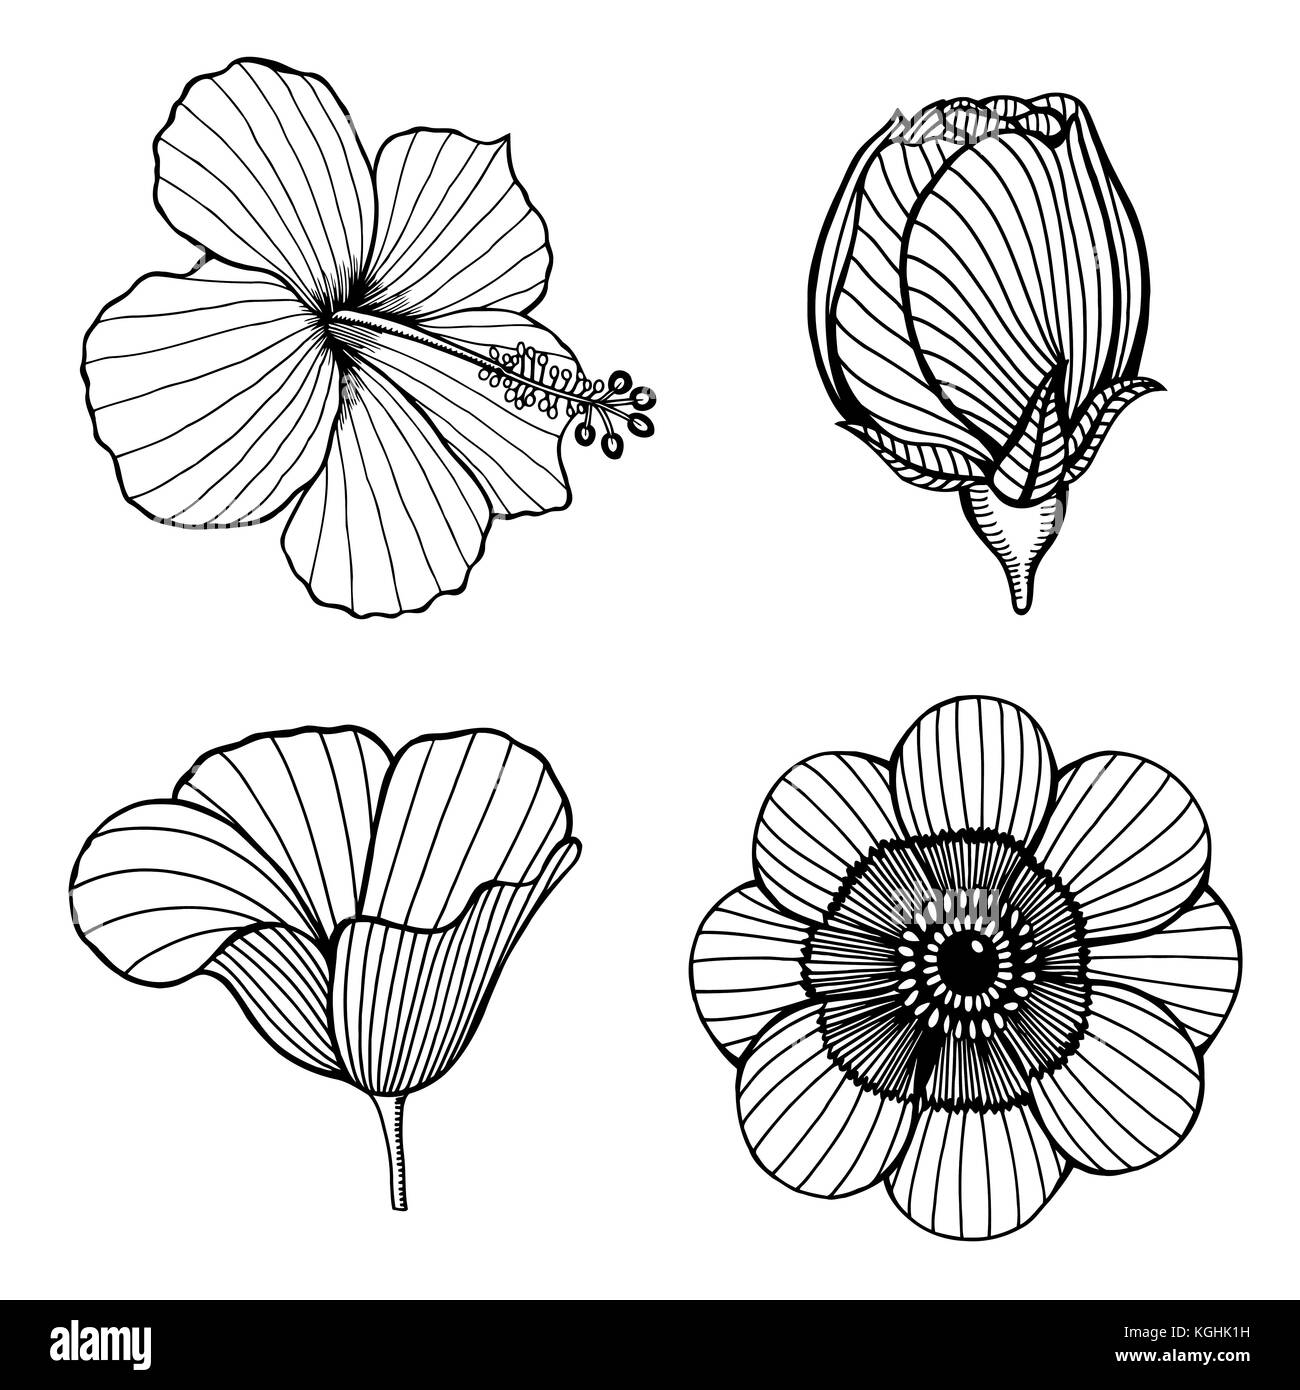 Vektor einrichten von Hand gezeichnet Lotus Blumen. Skizze blumen Botanik Sammlung in Grafik Schwarz und Weiß Stil Stock Vektor